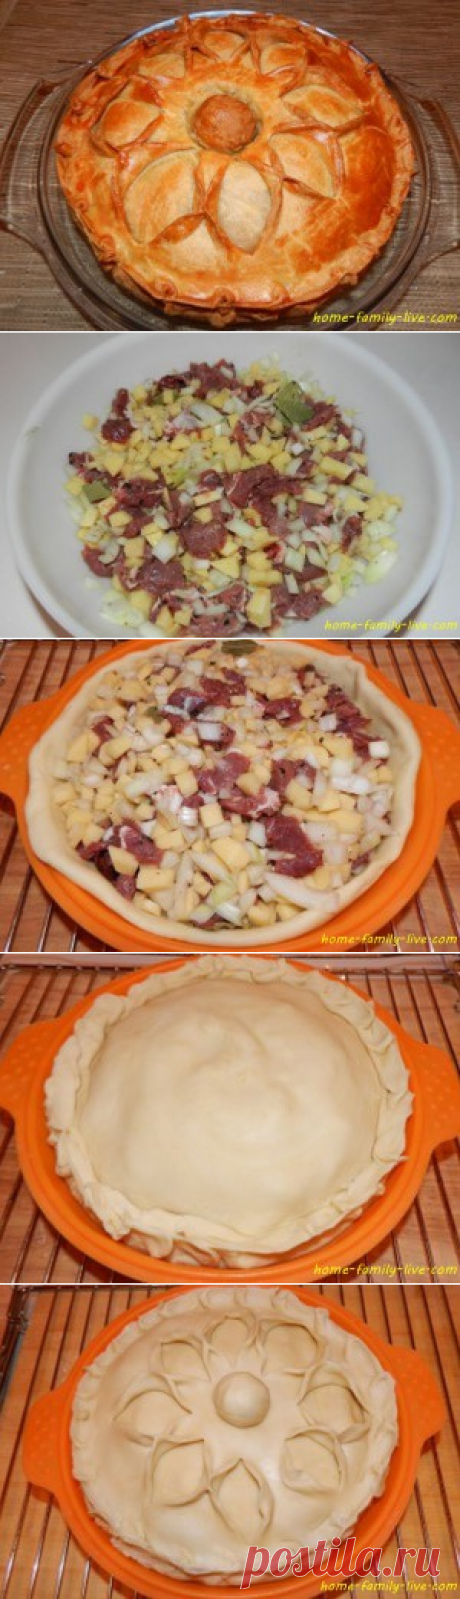 Пирог с мясом - пошаговый рецепт с фотоКулинарные рецепты